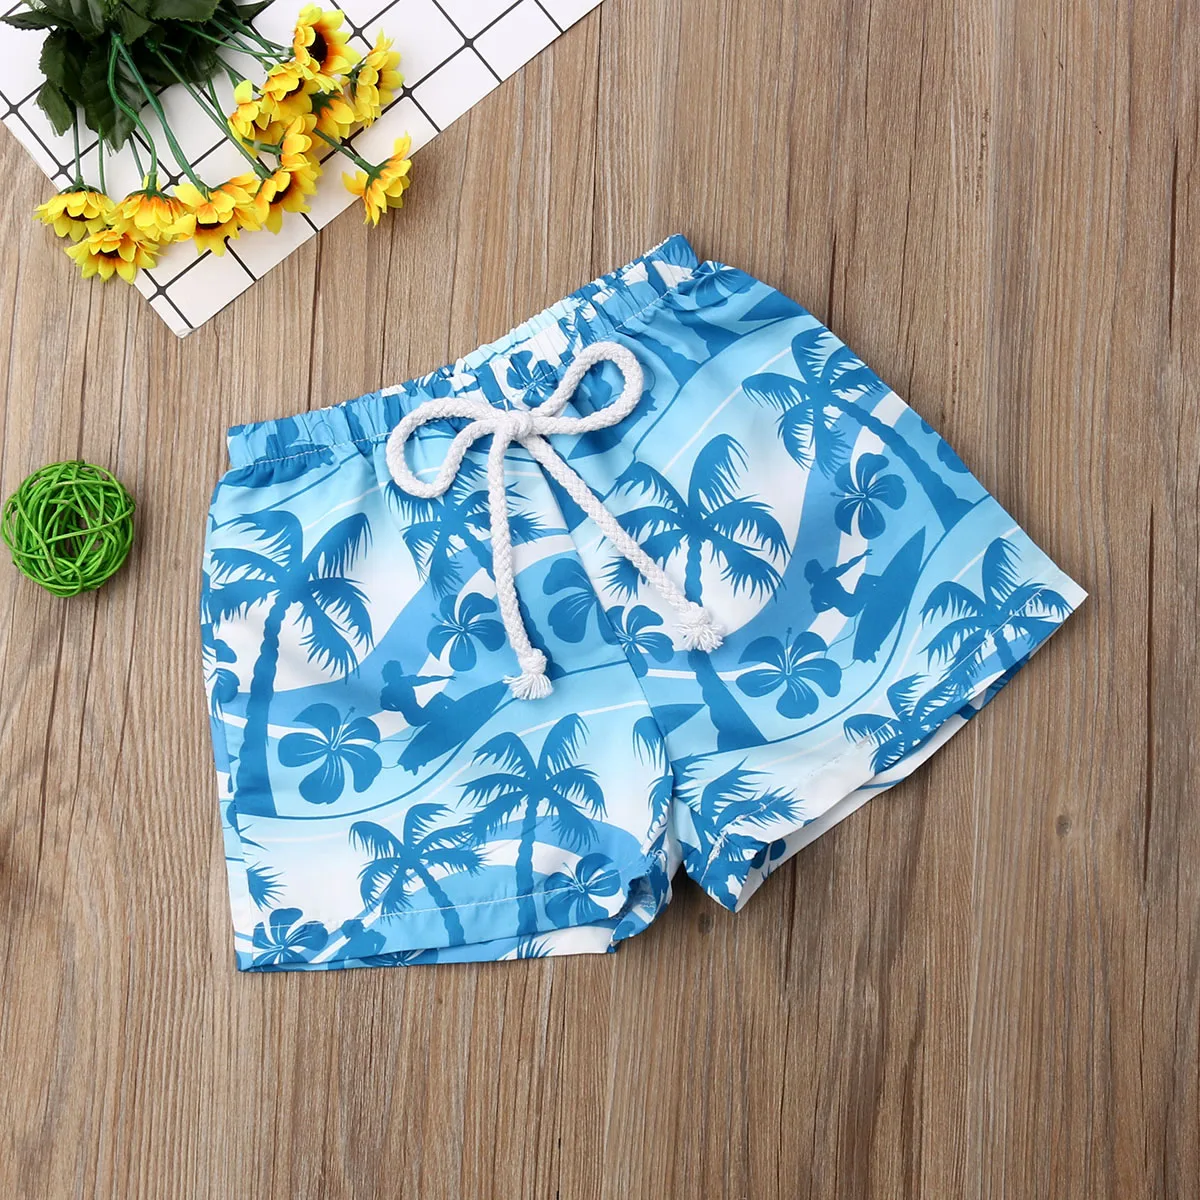 Гавайские плавательные пляжные шорты для маленьких мальчиков, короткий чемодан с эластичной резинкой на талии, летний праздничный купальный костюм для мальчика, пляжная одежда, пляжные шорты